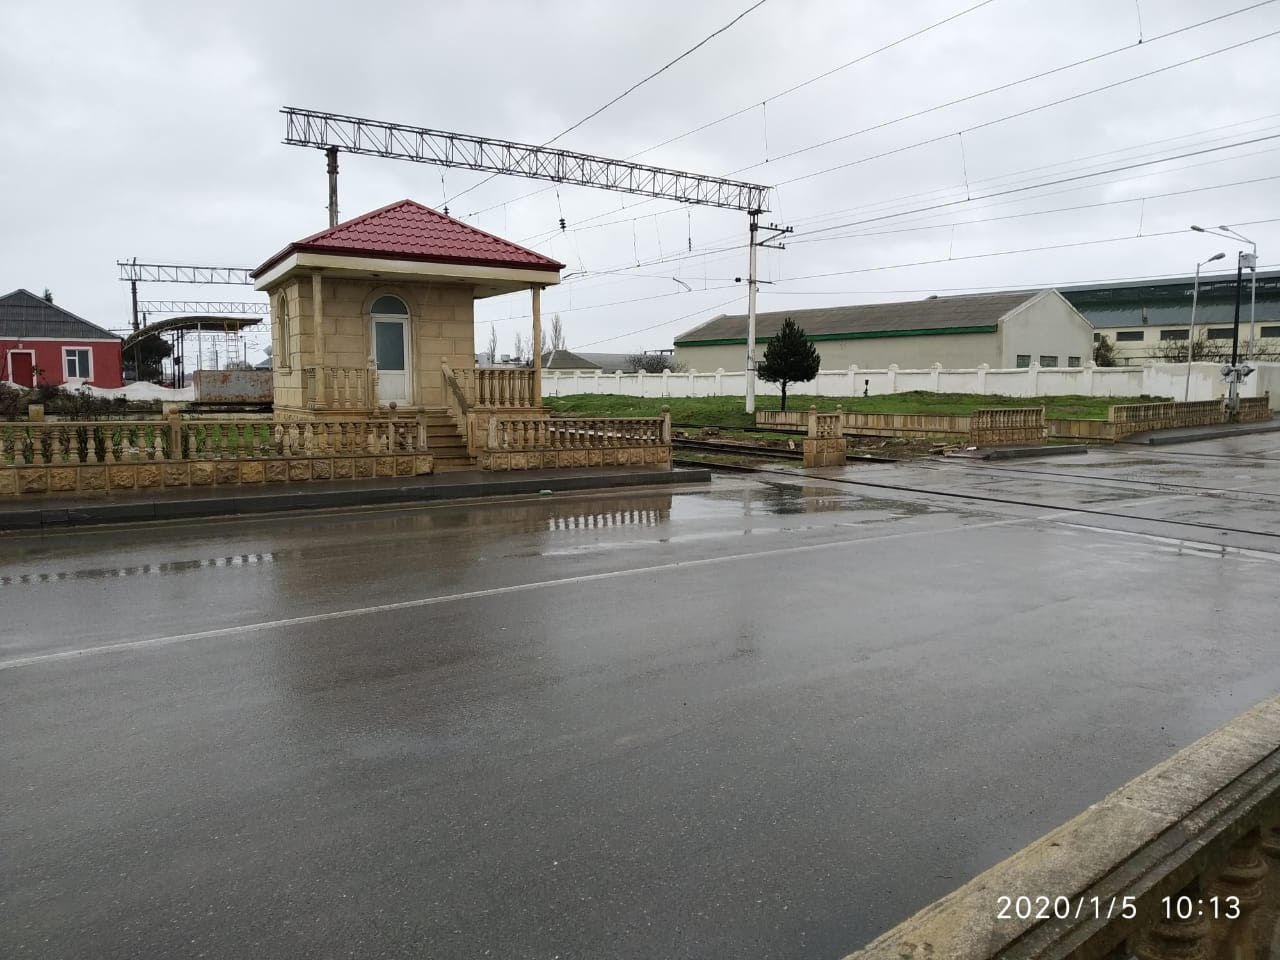 “Azərbaycan Dəmir Yolları”: Qala stansiyasında yol-nəqliyyat hadisəsi baş verib